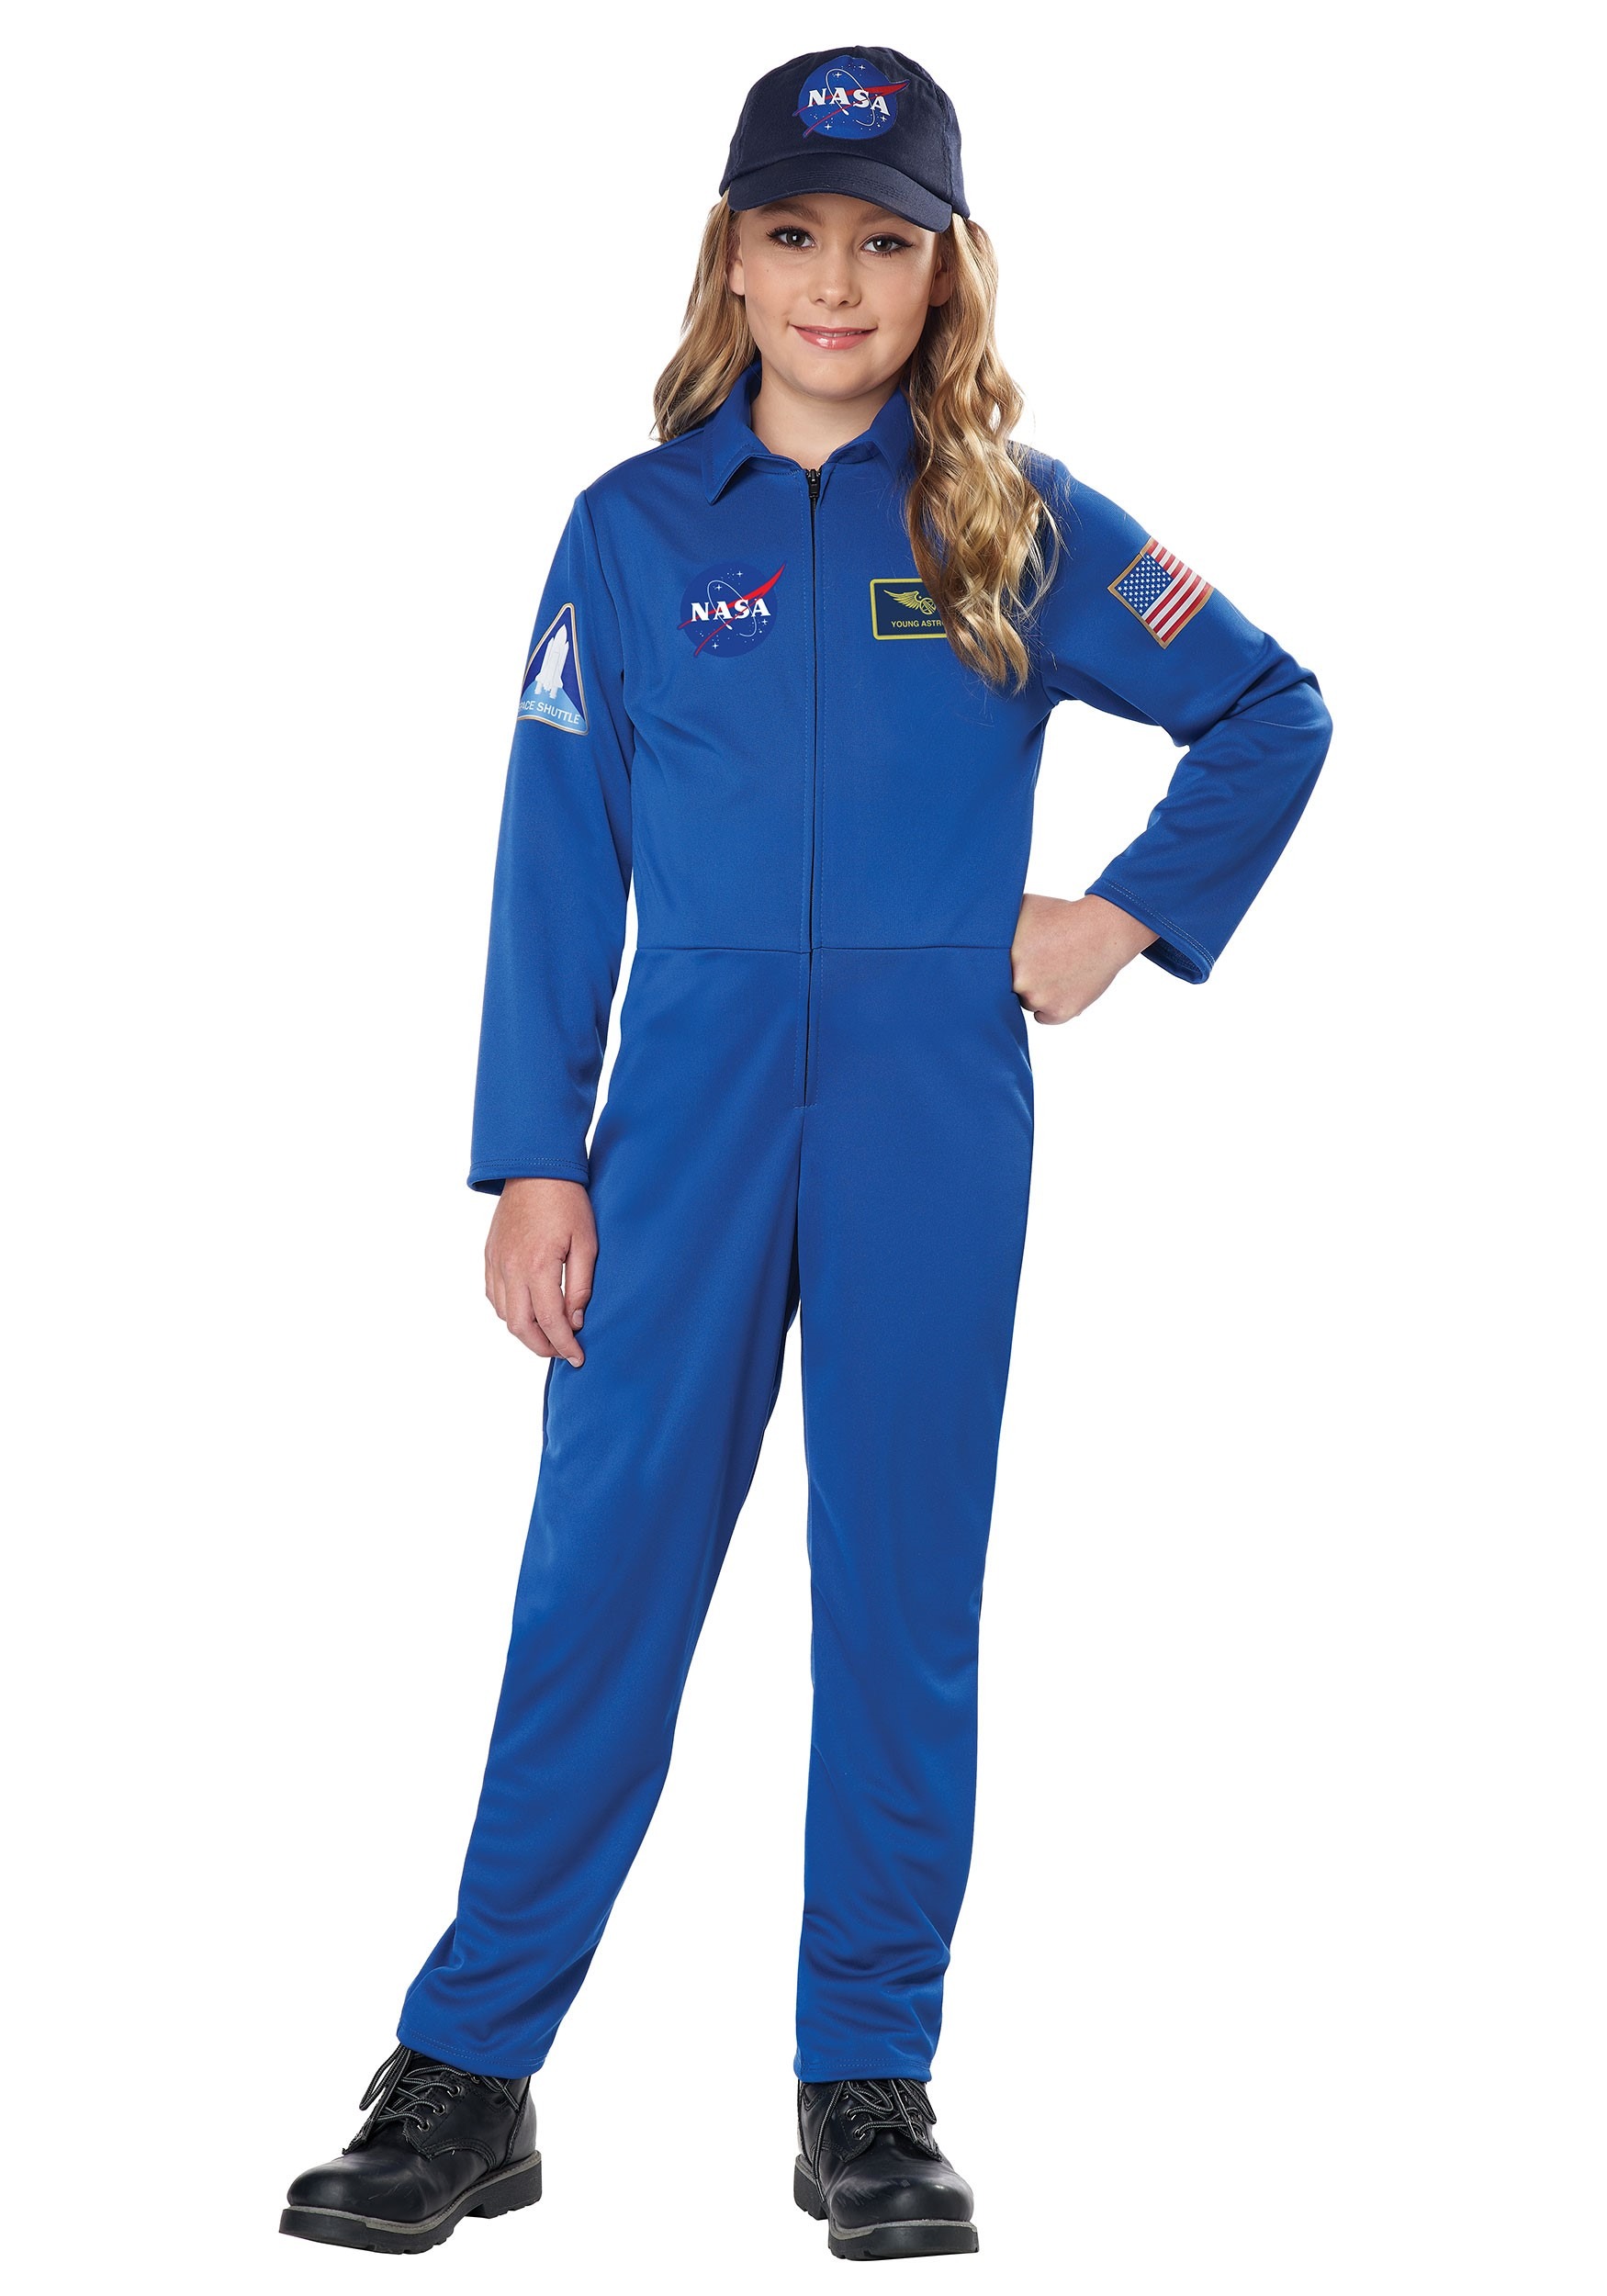 Kids Blue Jumpsuit Costume NASA